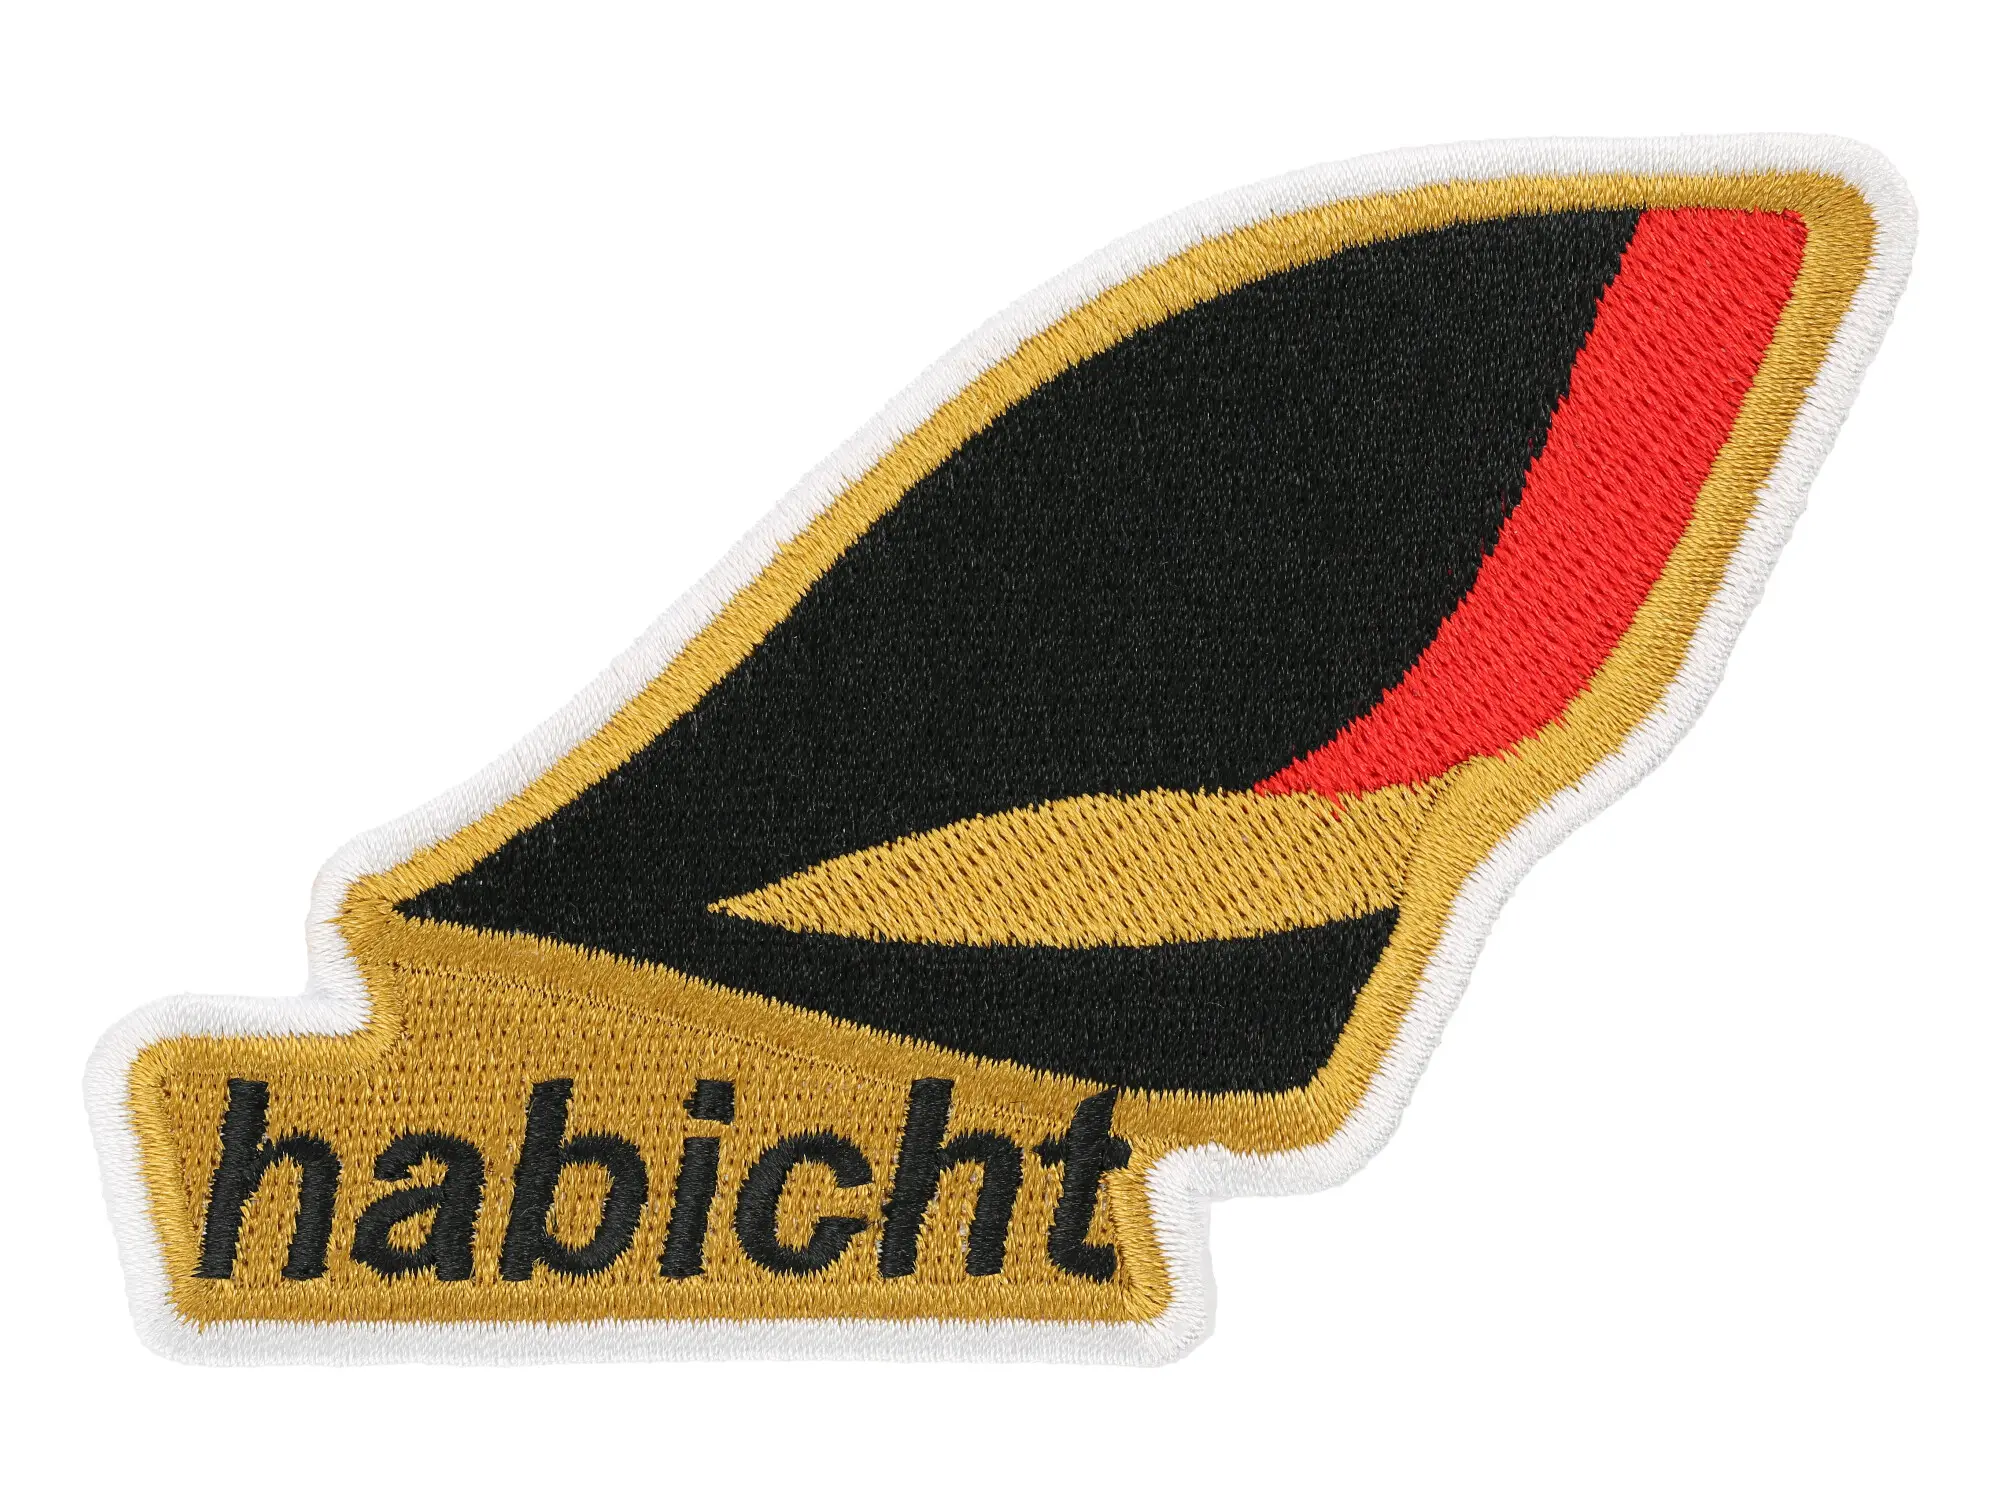 Patch, Aufnäher "Habicht" 110x75mm, Art.-Nr.: 10072707 - Bild 1